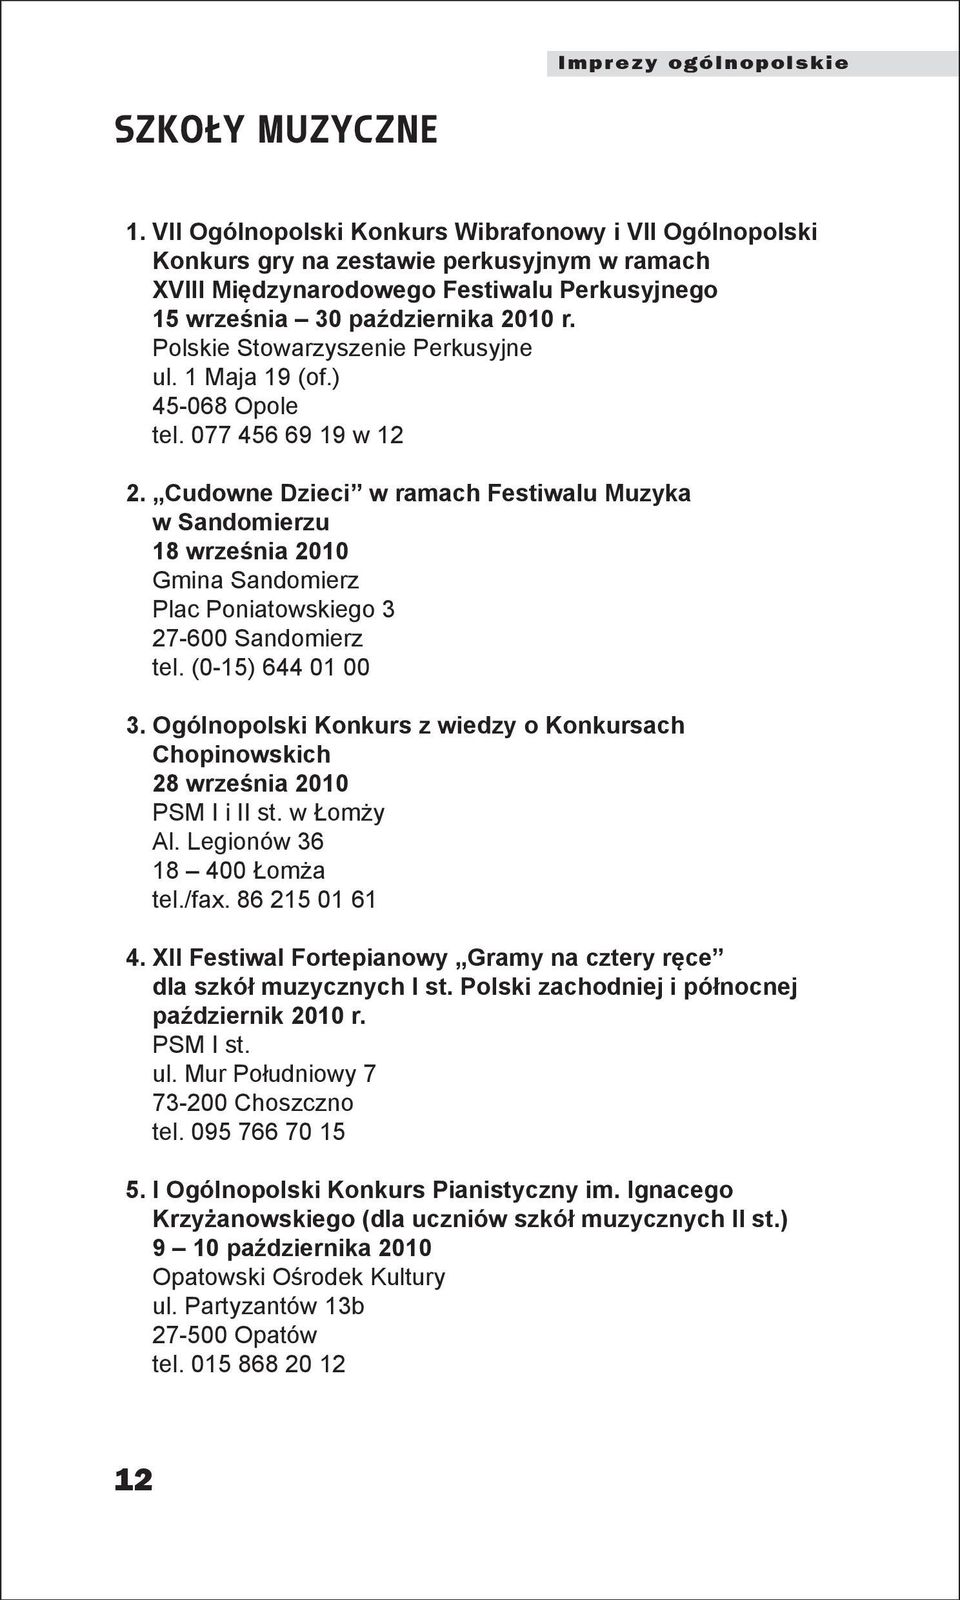 Polskie Stowarzyszenie Perkusyjne ul. 1 Maja 19 (of.) 45-068 Opole tel. 077 456 69 19 w 12 2.